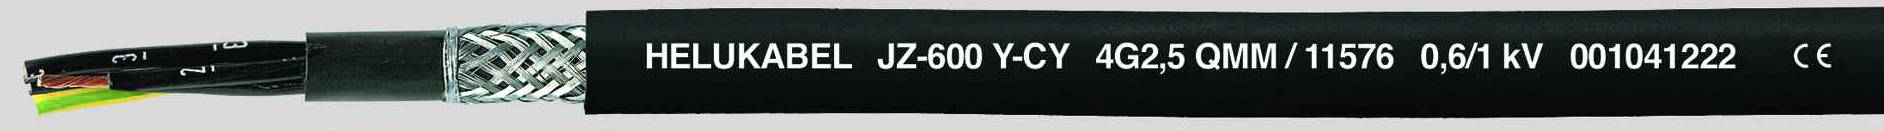 HELUKABEL JZ-600-Y-CY Steuerleitung 3 G 0.75 mm² Schwarz 11490-500 500 m